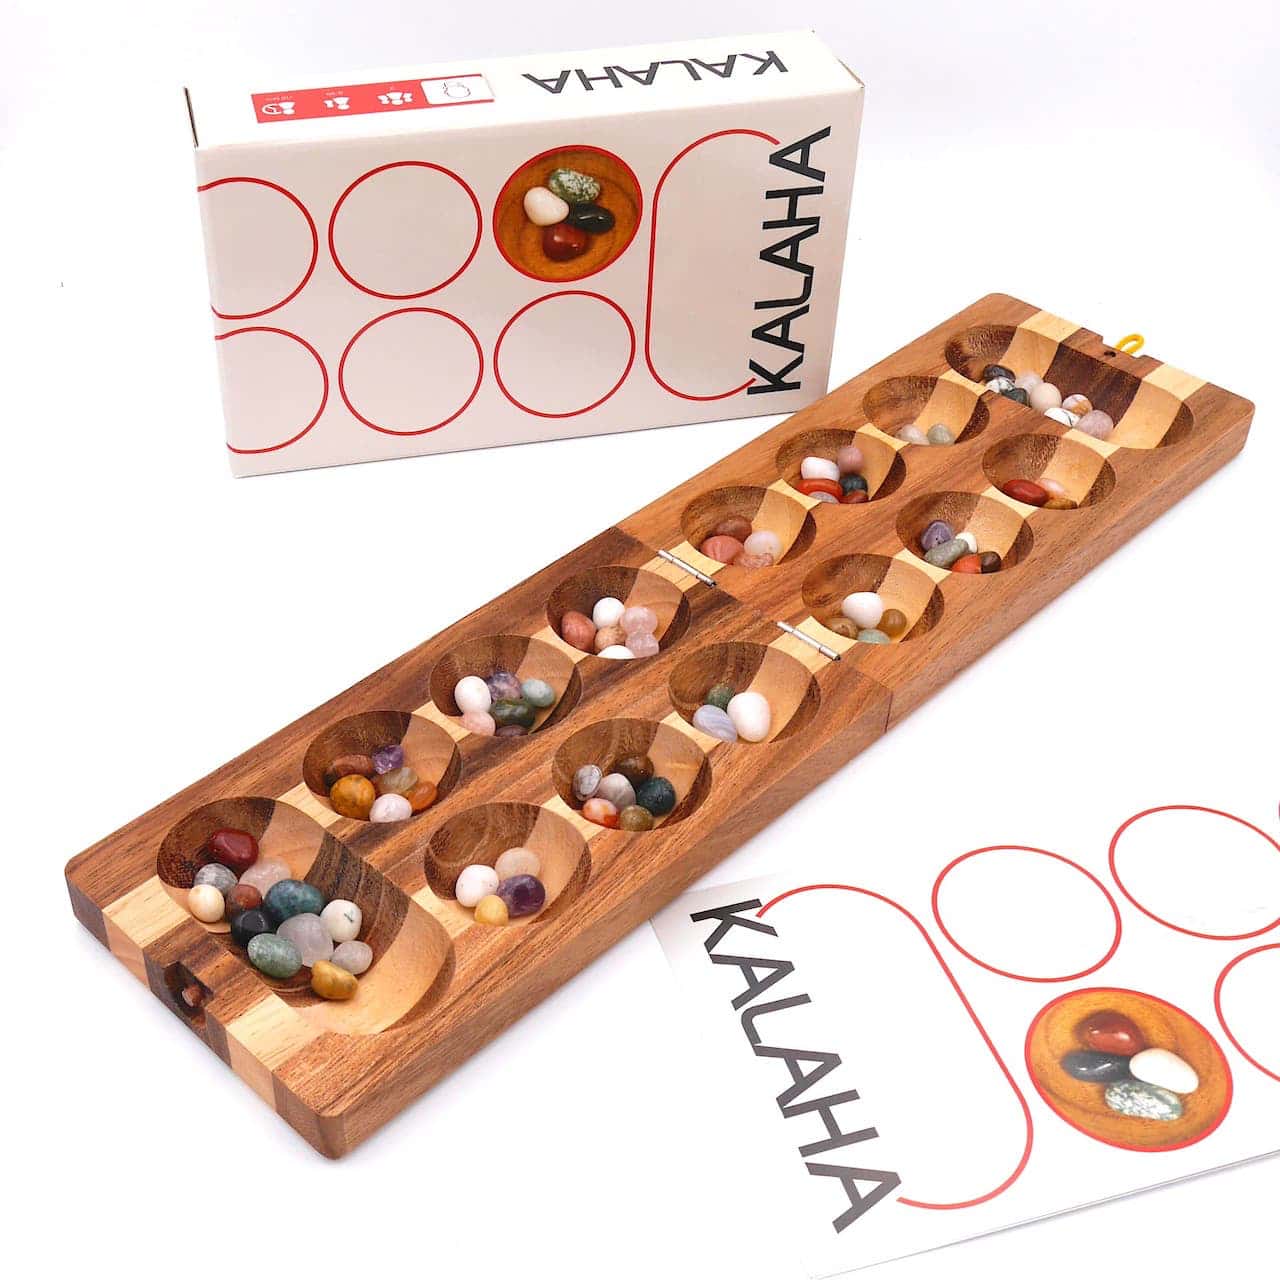 Kalaha - hochwertiges Steinchenspiel inkl. Spielsteinen aus Holz für 2 Personen